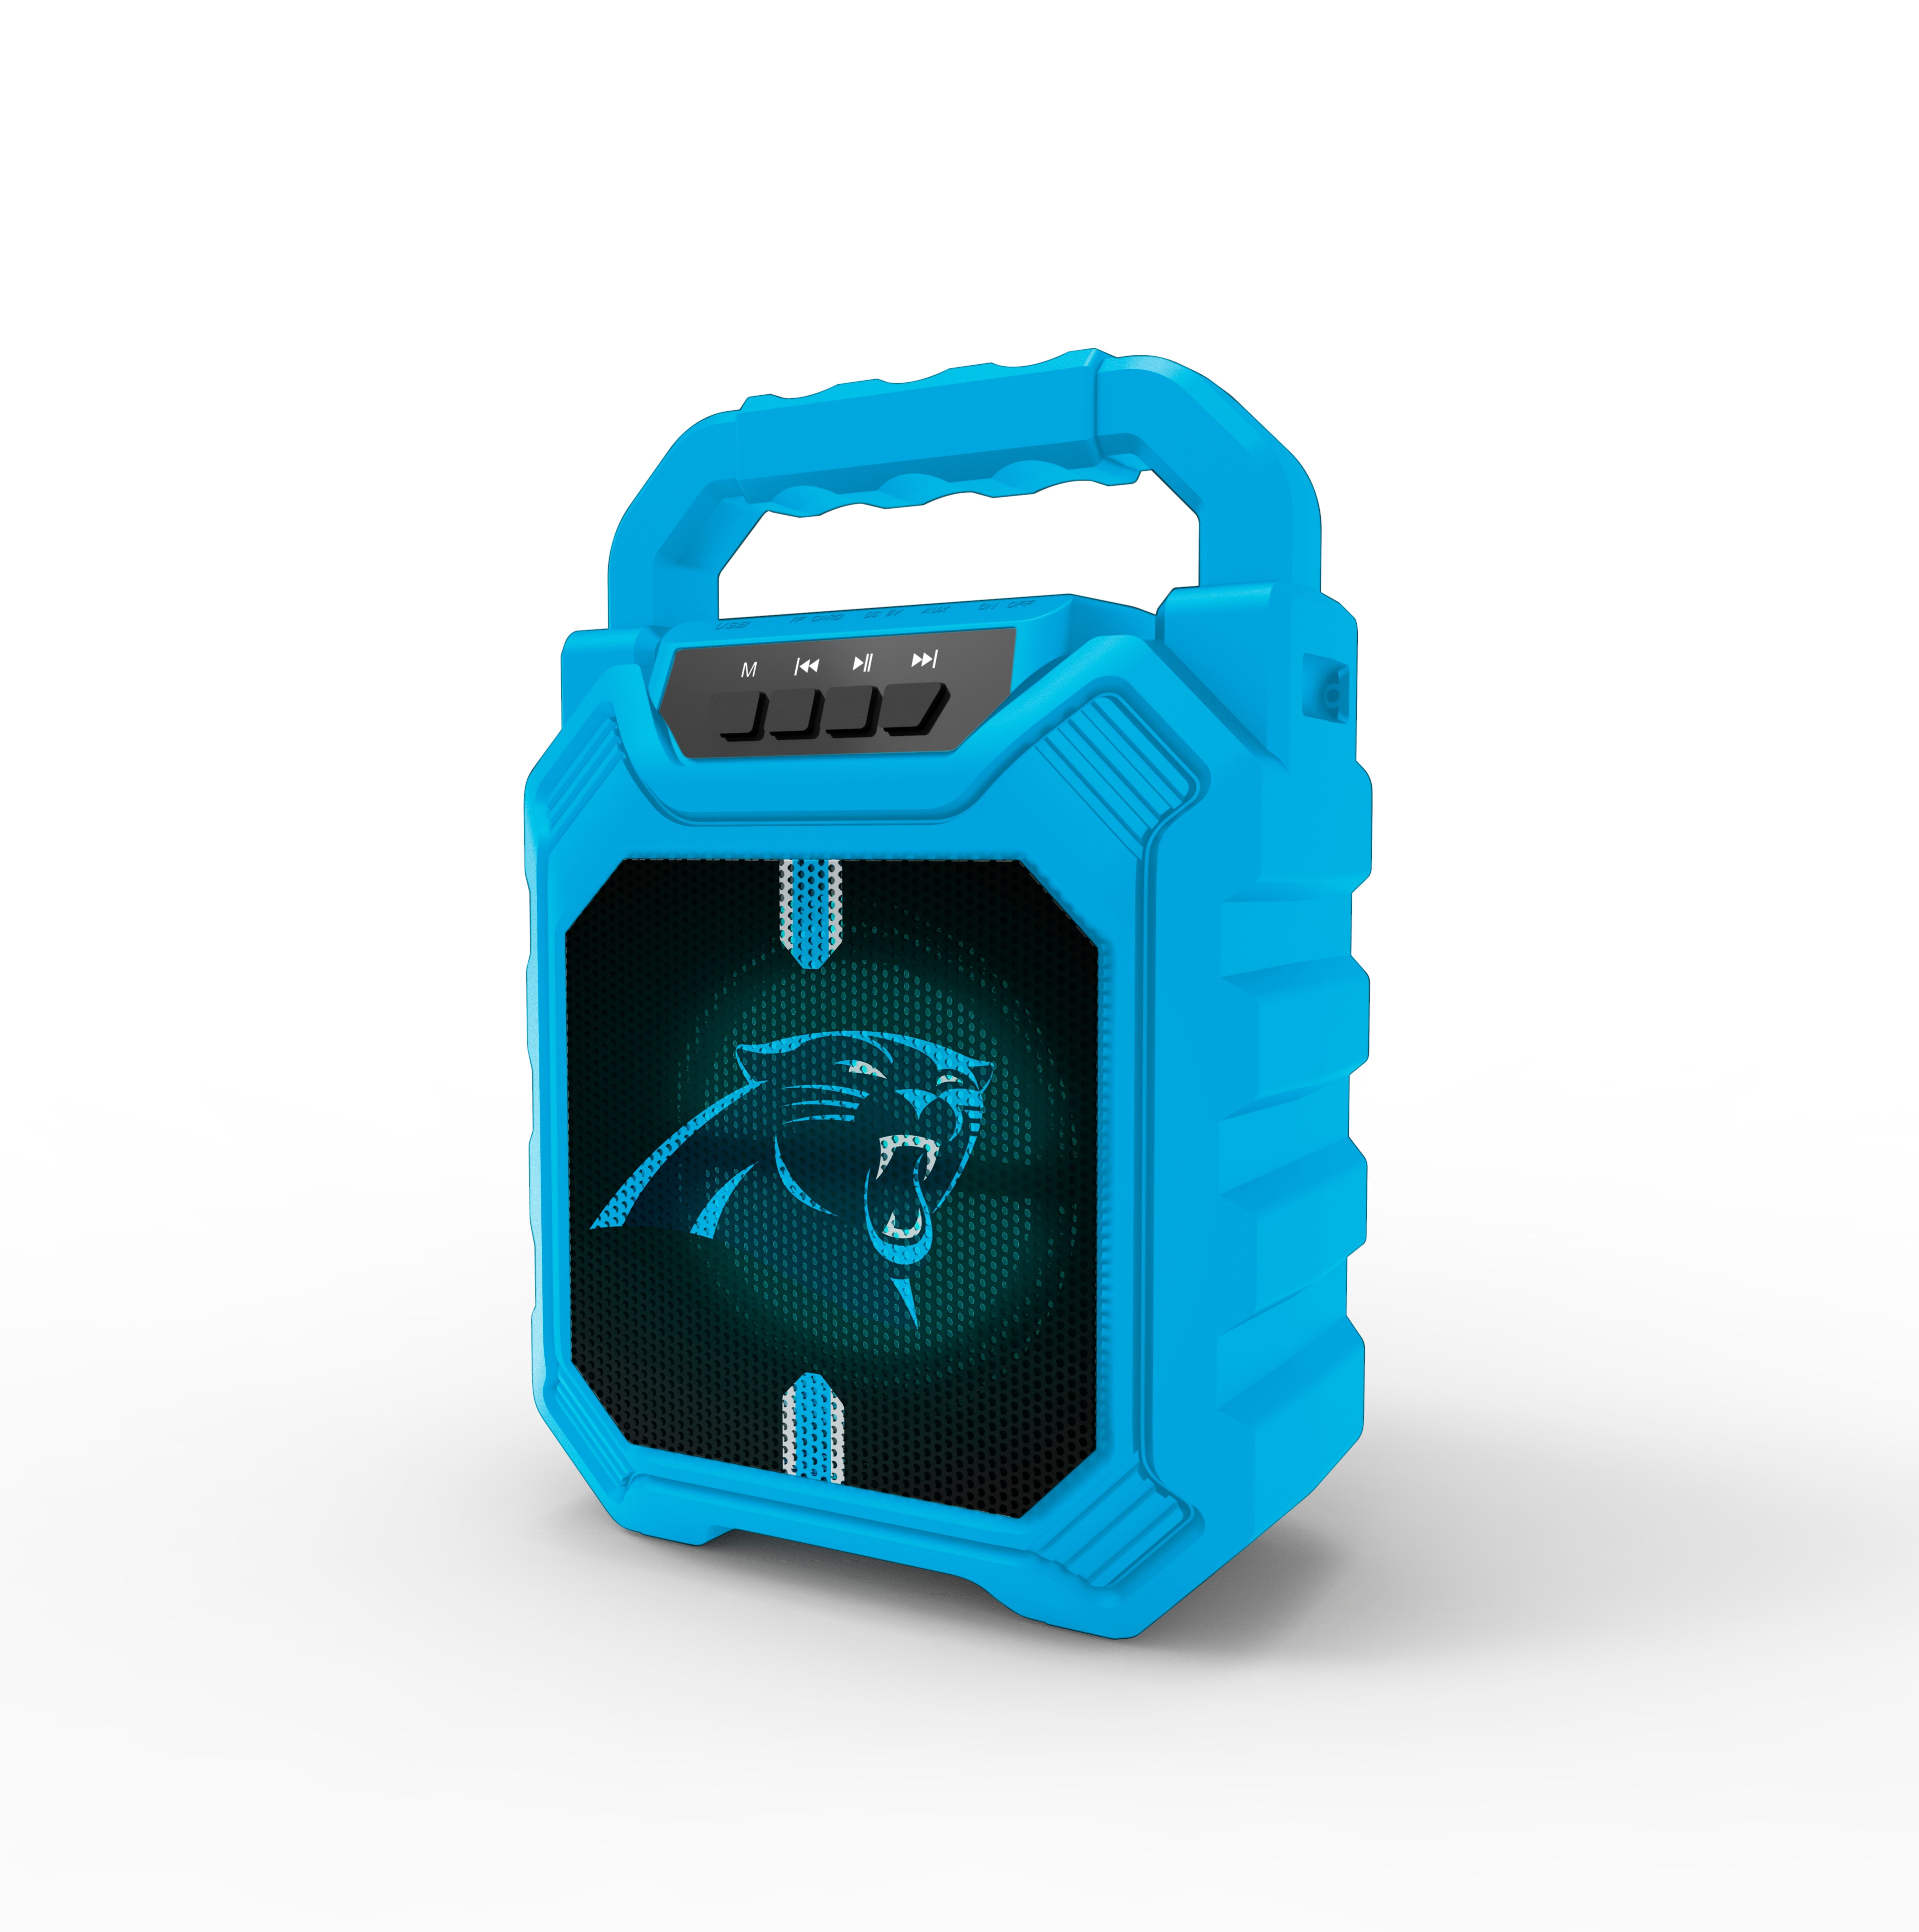 NFL Shockbox XL2 Bluetooth Speaker